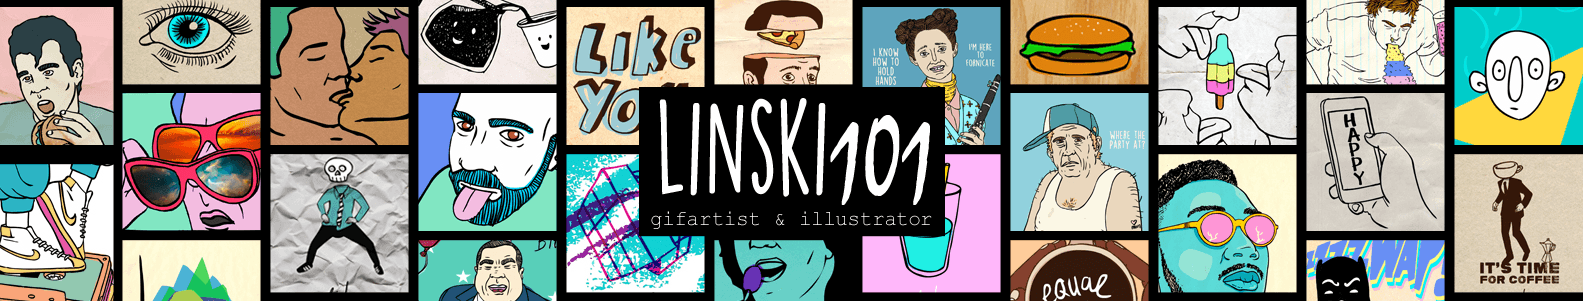 linski101 banner